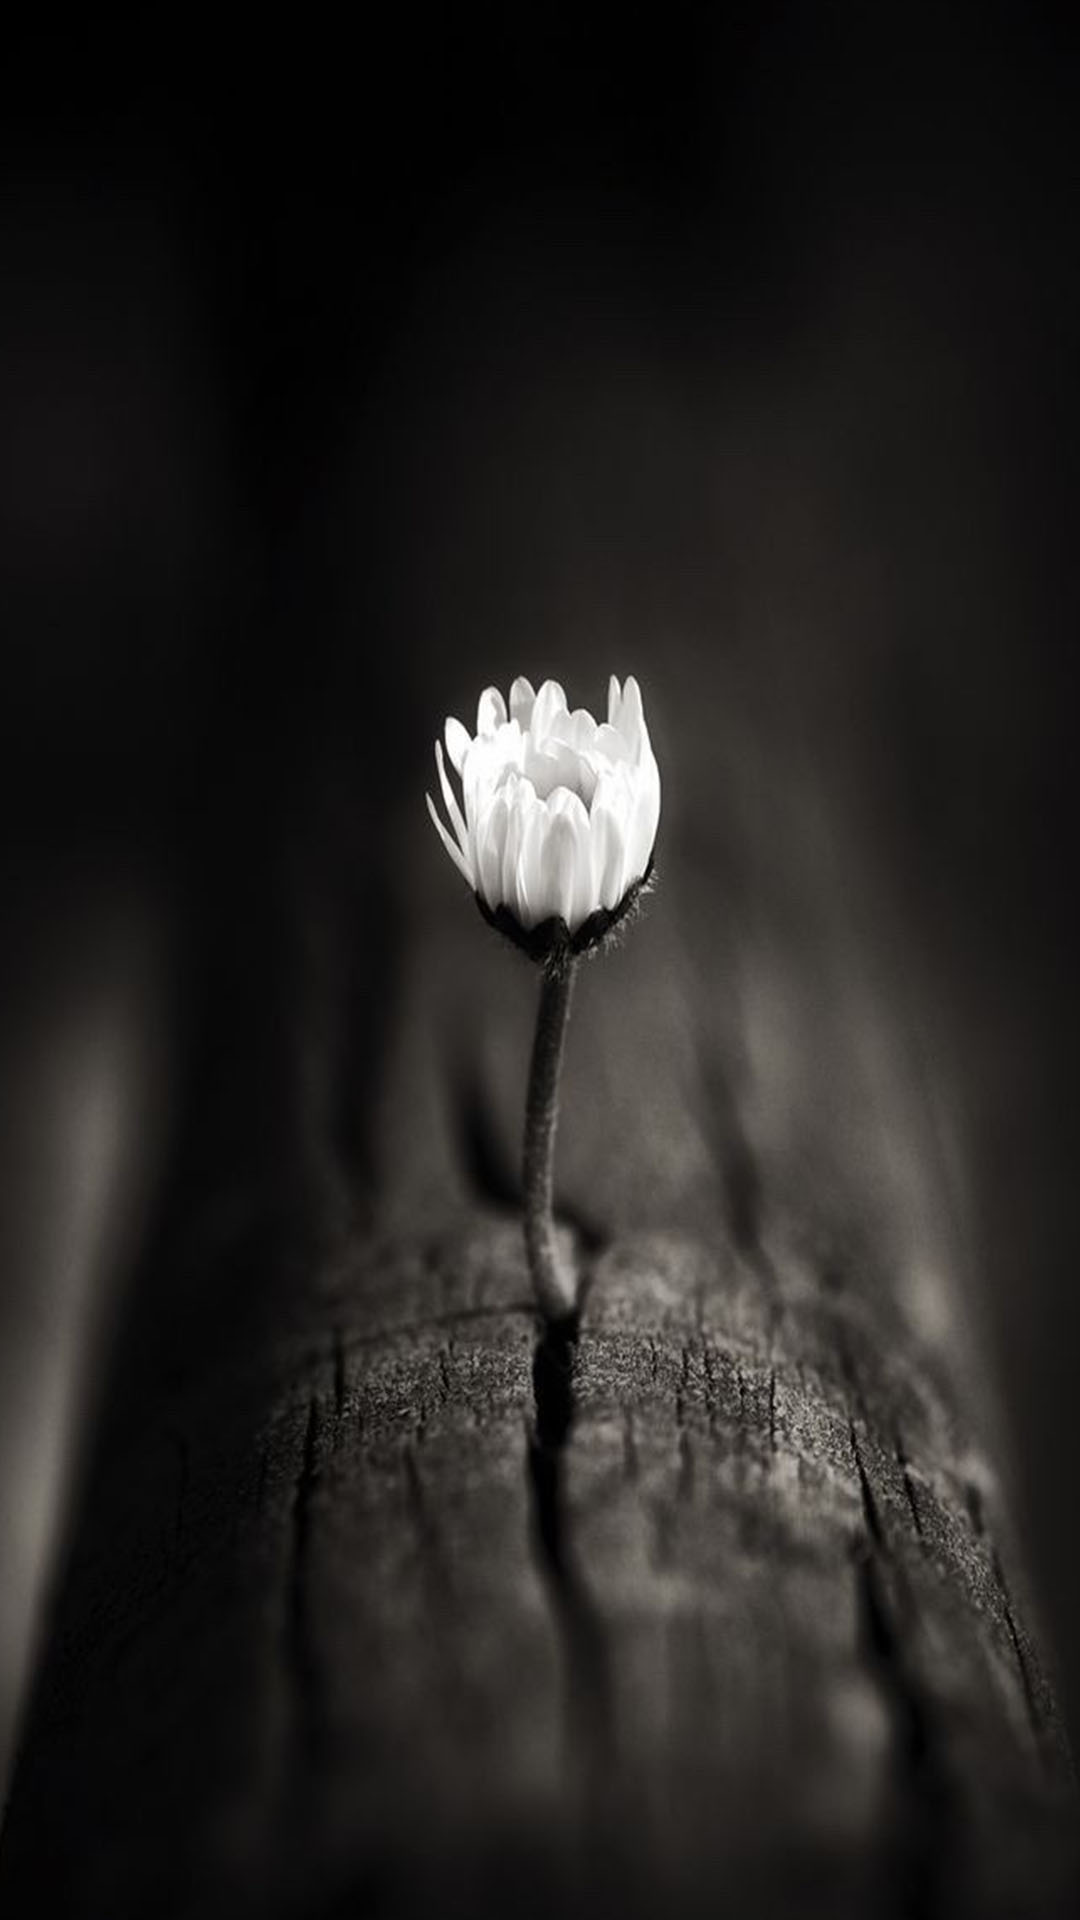 Với hình ảnh hoa cúc trắng nền đen, bạn sẽ được trải nghiệm một cảm giác mới lạ khác biệt hoàn toàn so với các hình ảnh hoa thông thường. Với sự kết hợp của hai tông màu tối và sáng, hình ảnh này tuyệt đẹp và đầy bí ẩn. Hãy để mình mê mẩn với hình ảnh hoa cúc trắng nền đen này.